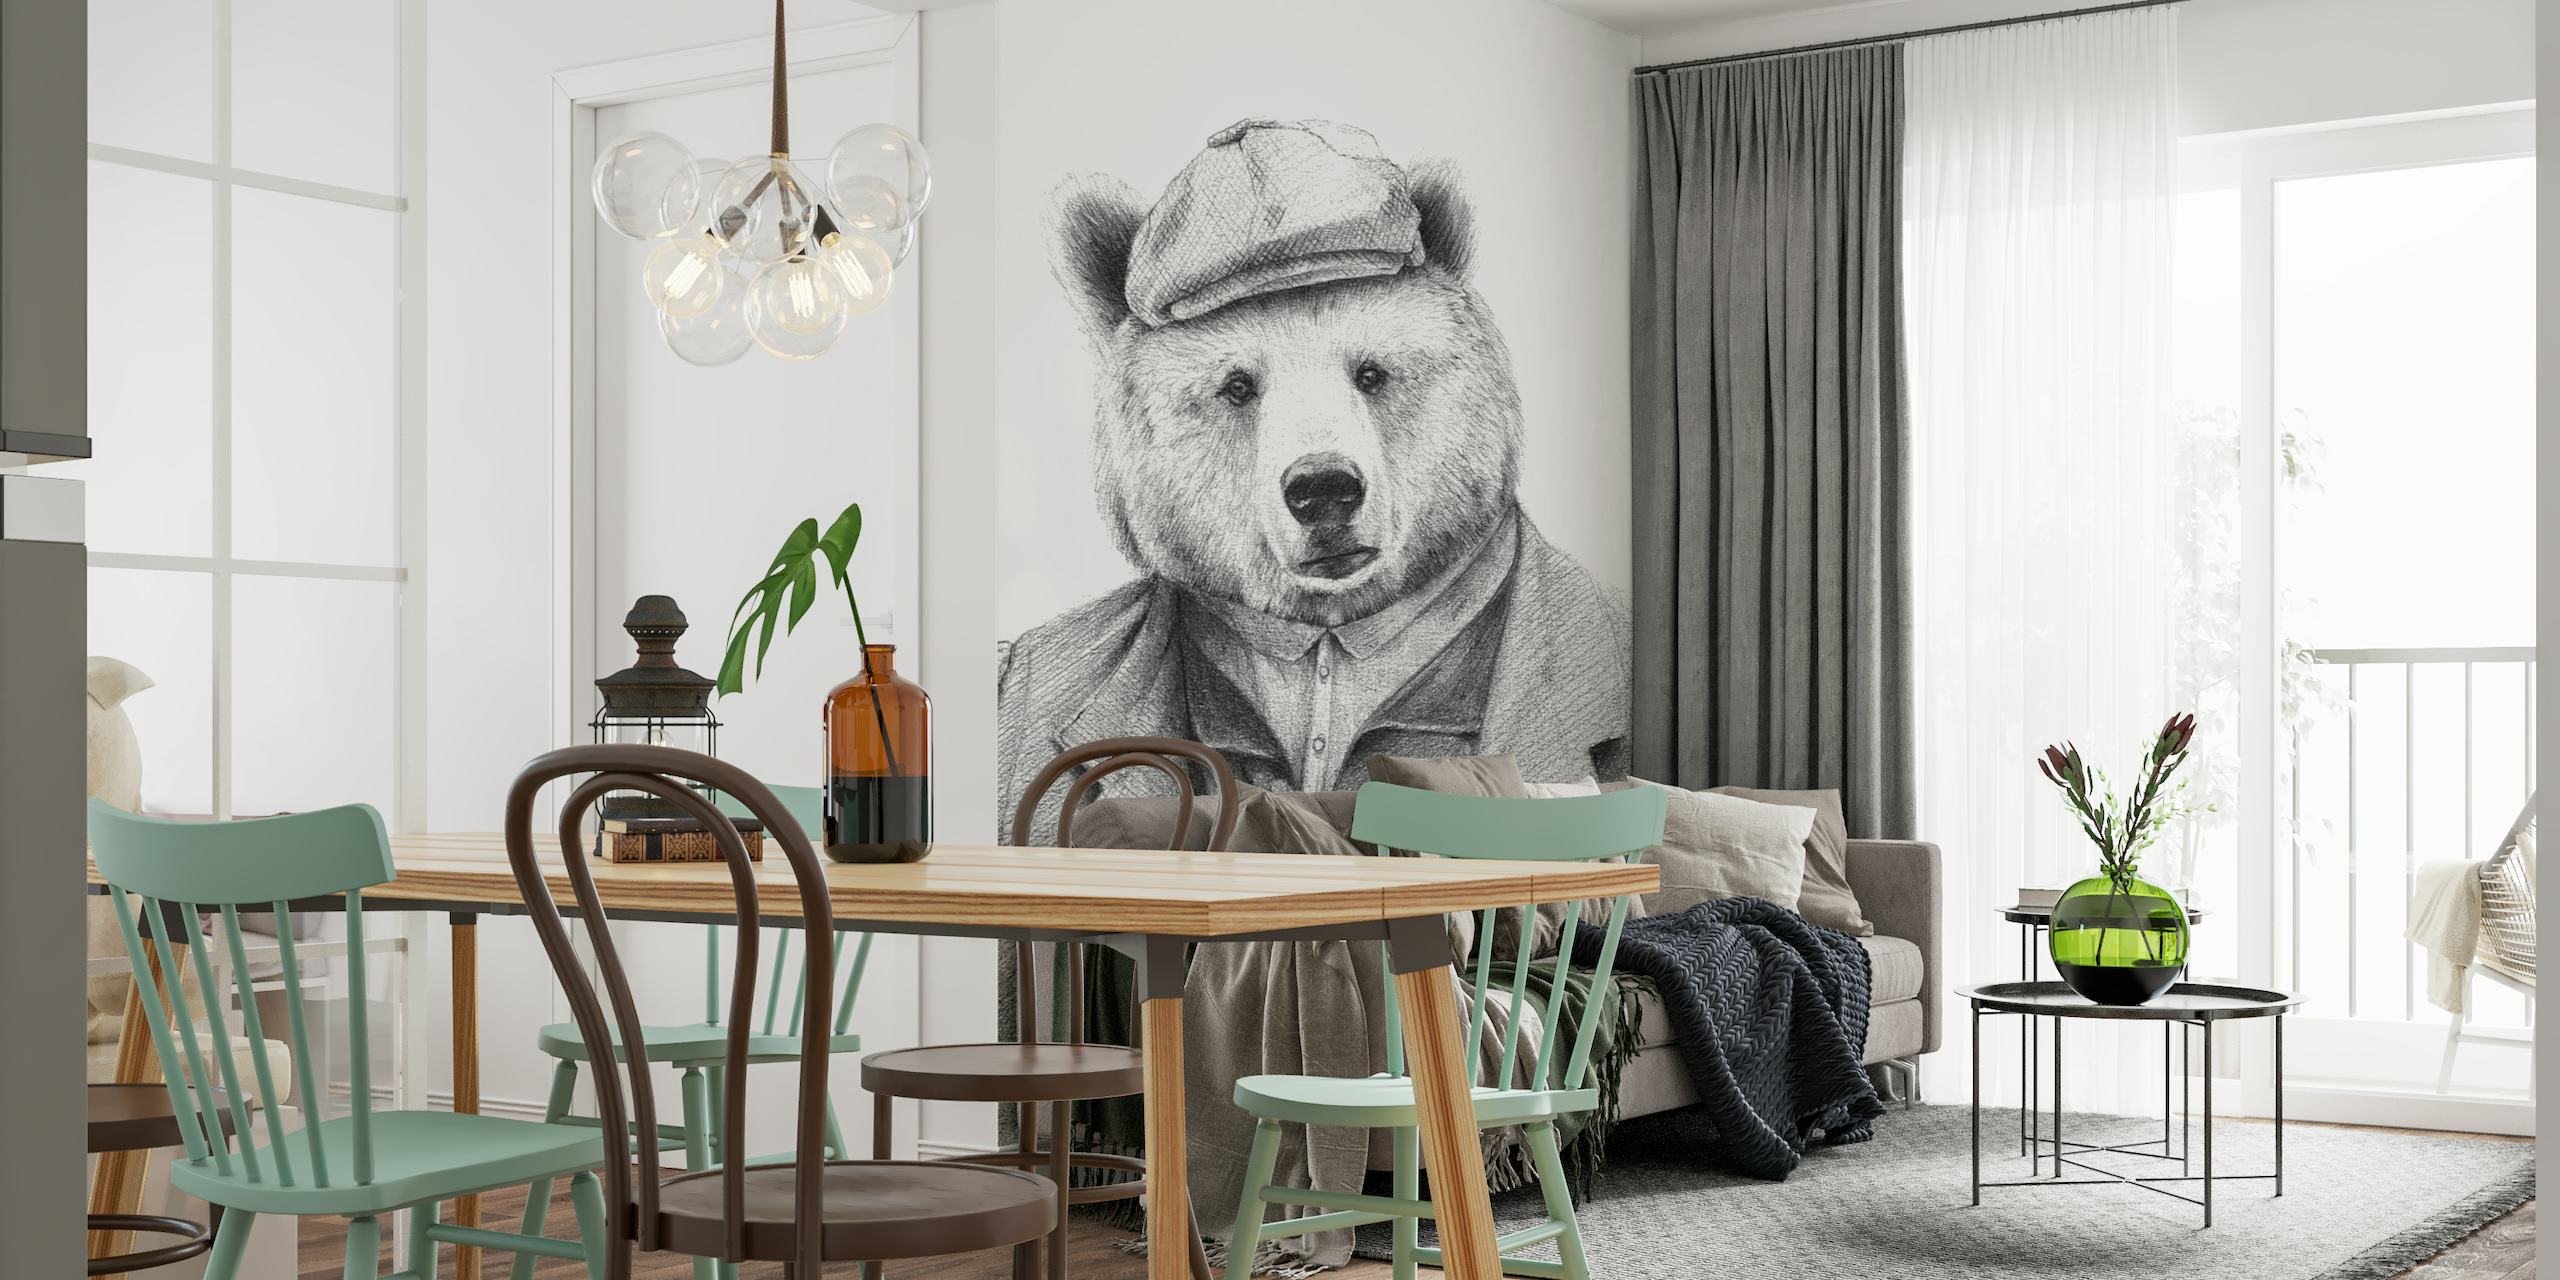 Ilustracja fototapety z niedźwiedziem w ubraniu